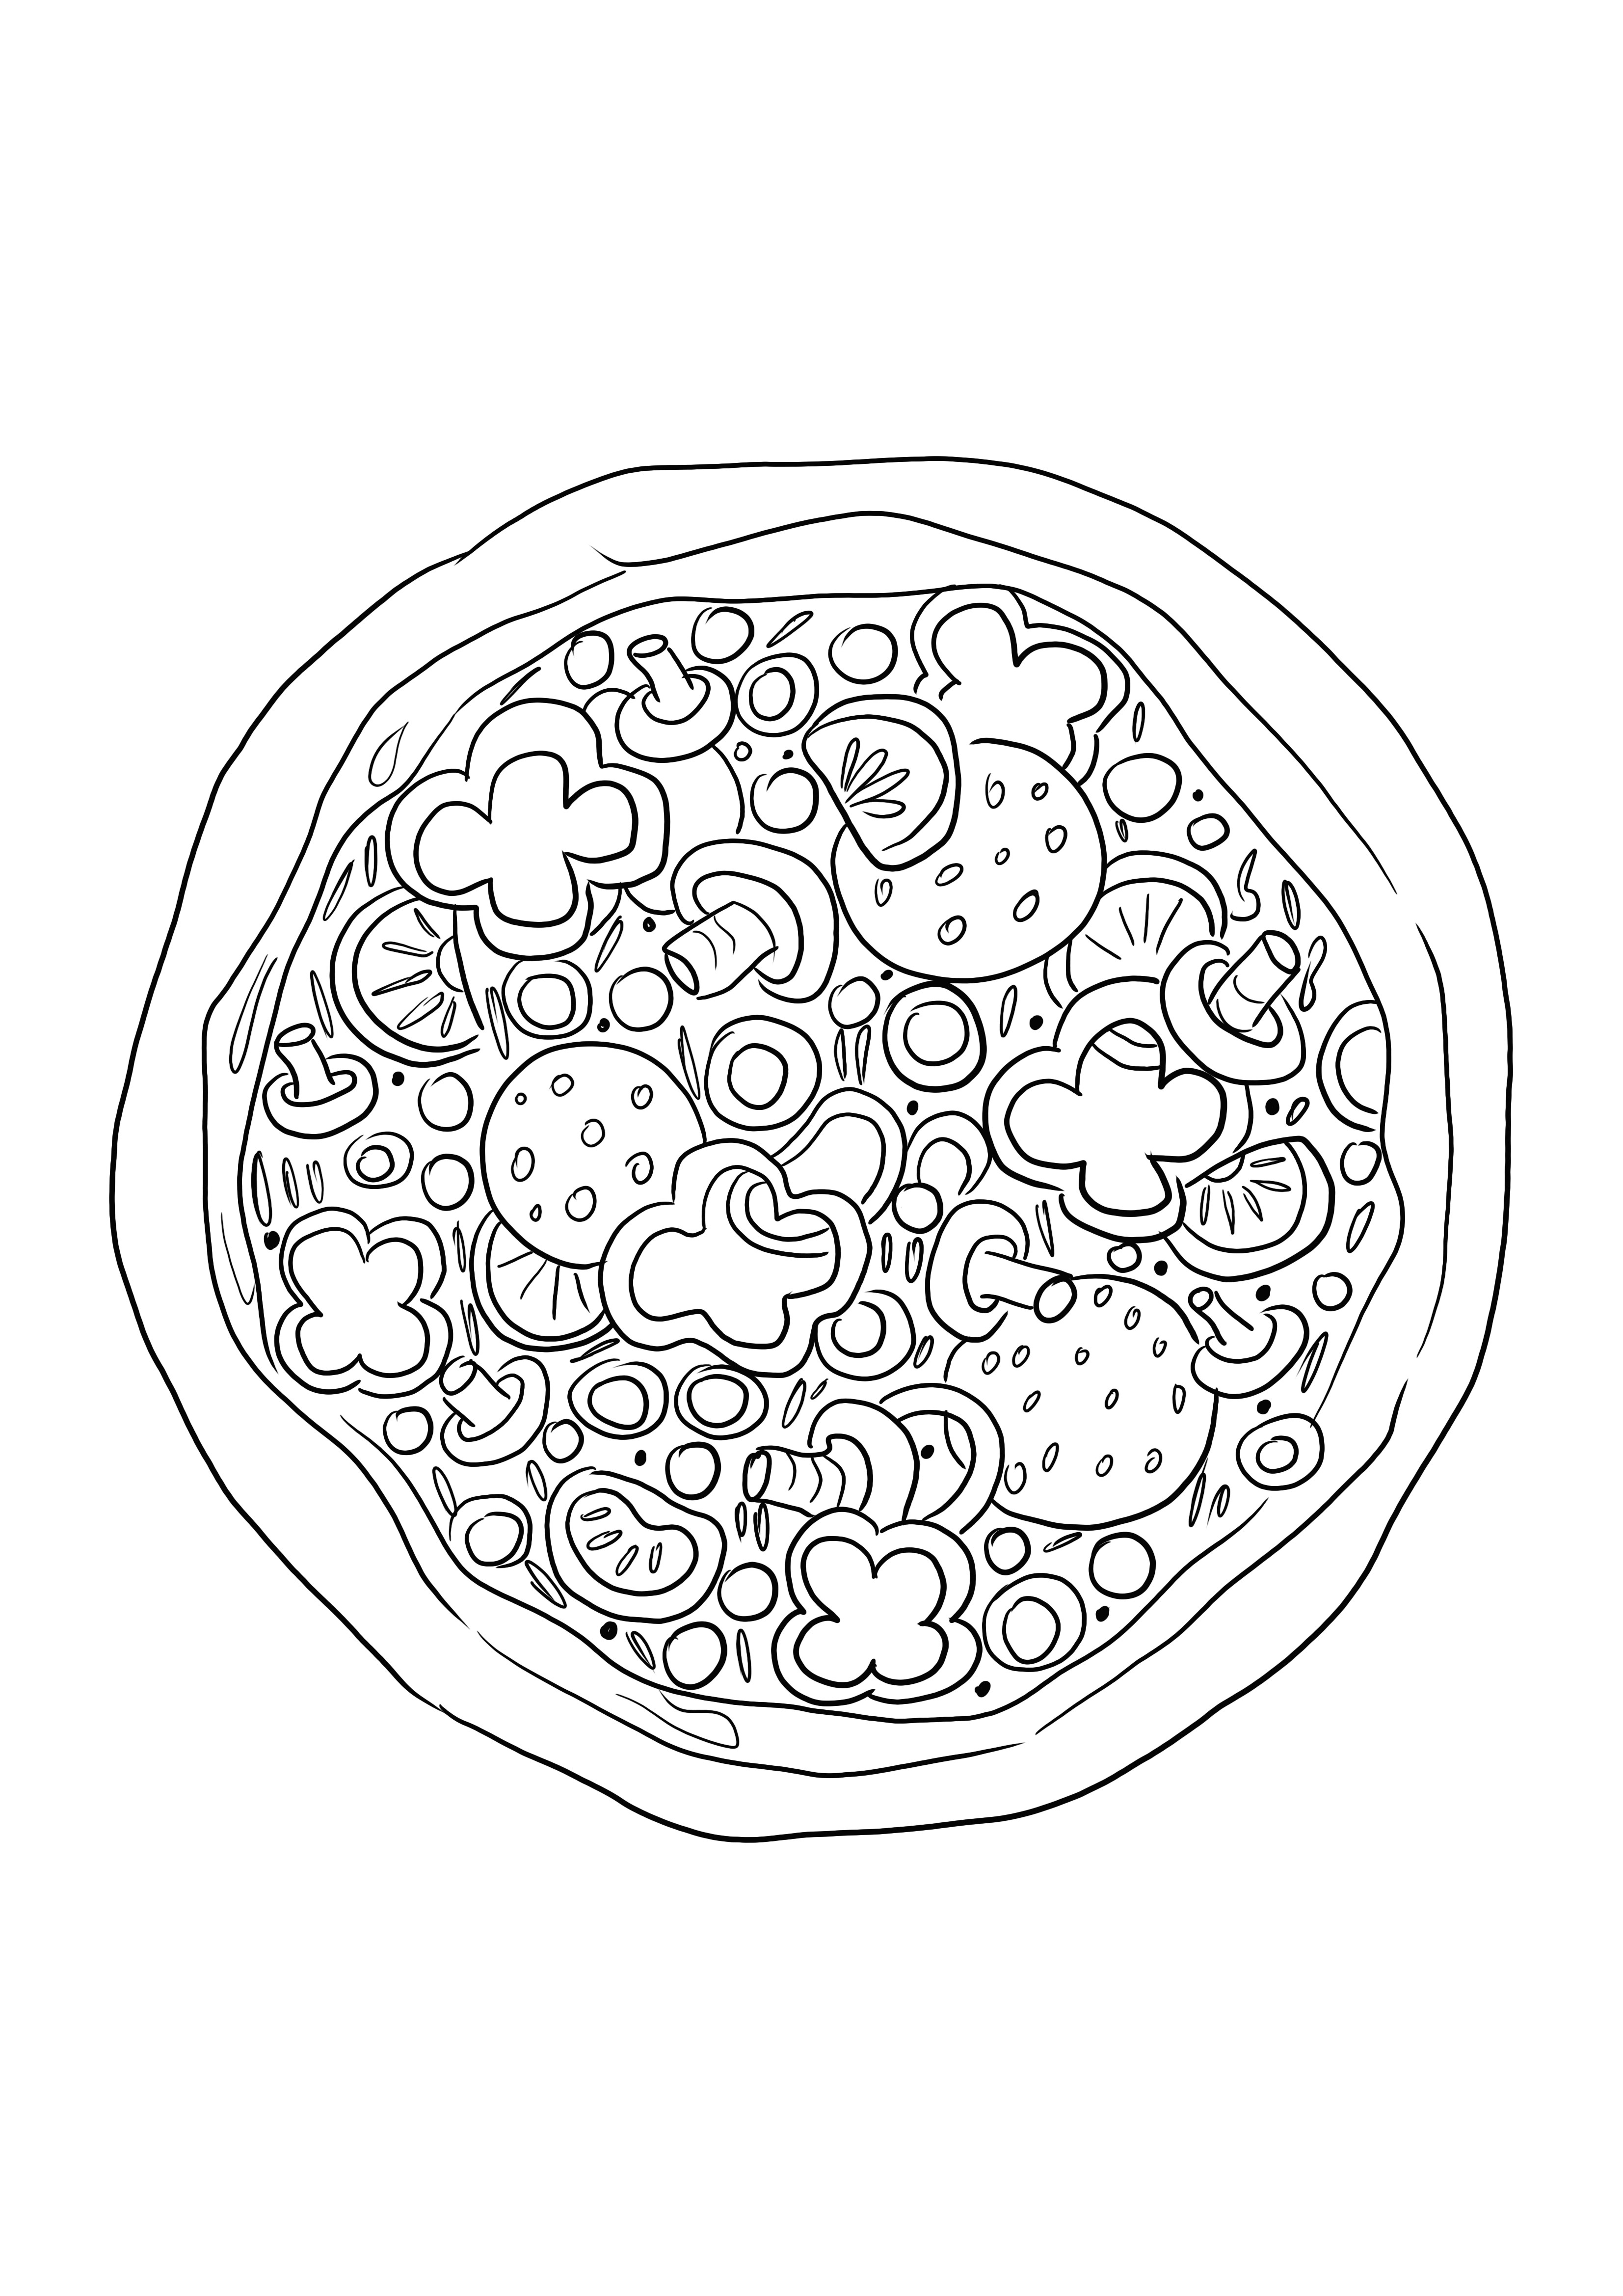 Pizza-Ausmalbild für Kinder zum einfachen Ausmalen und Lernen über Essen